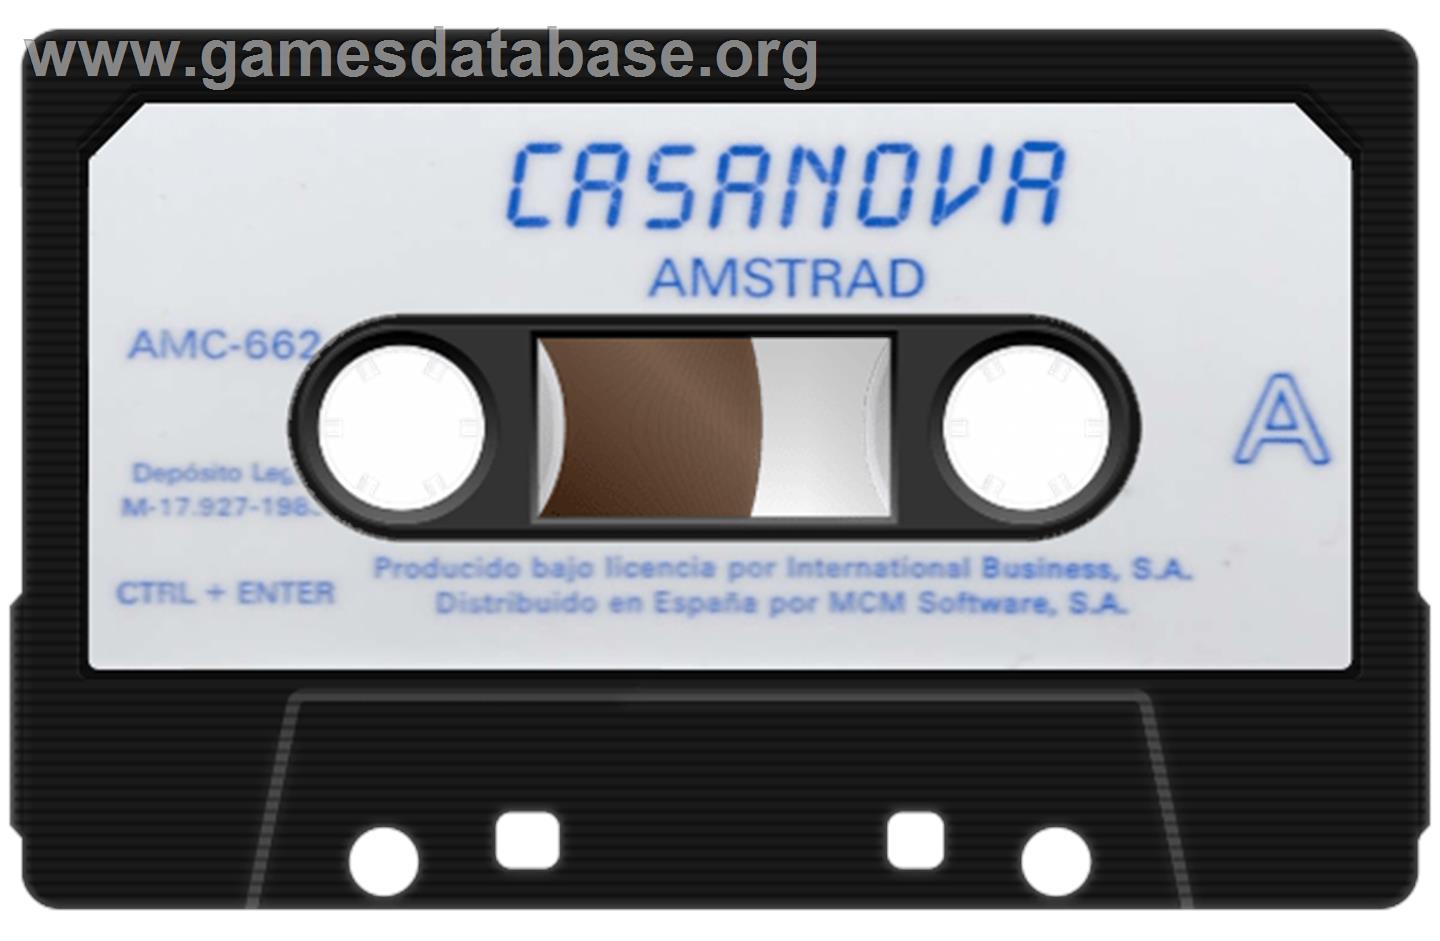 Casanova - Amstrad CPC - Artwork - Cartridge